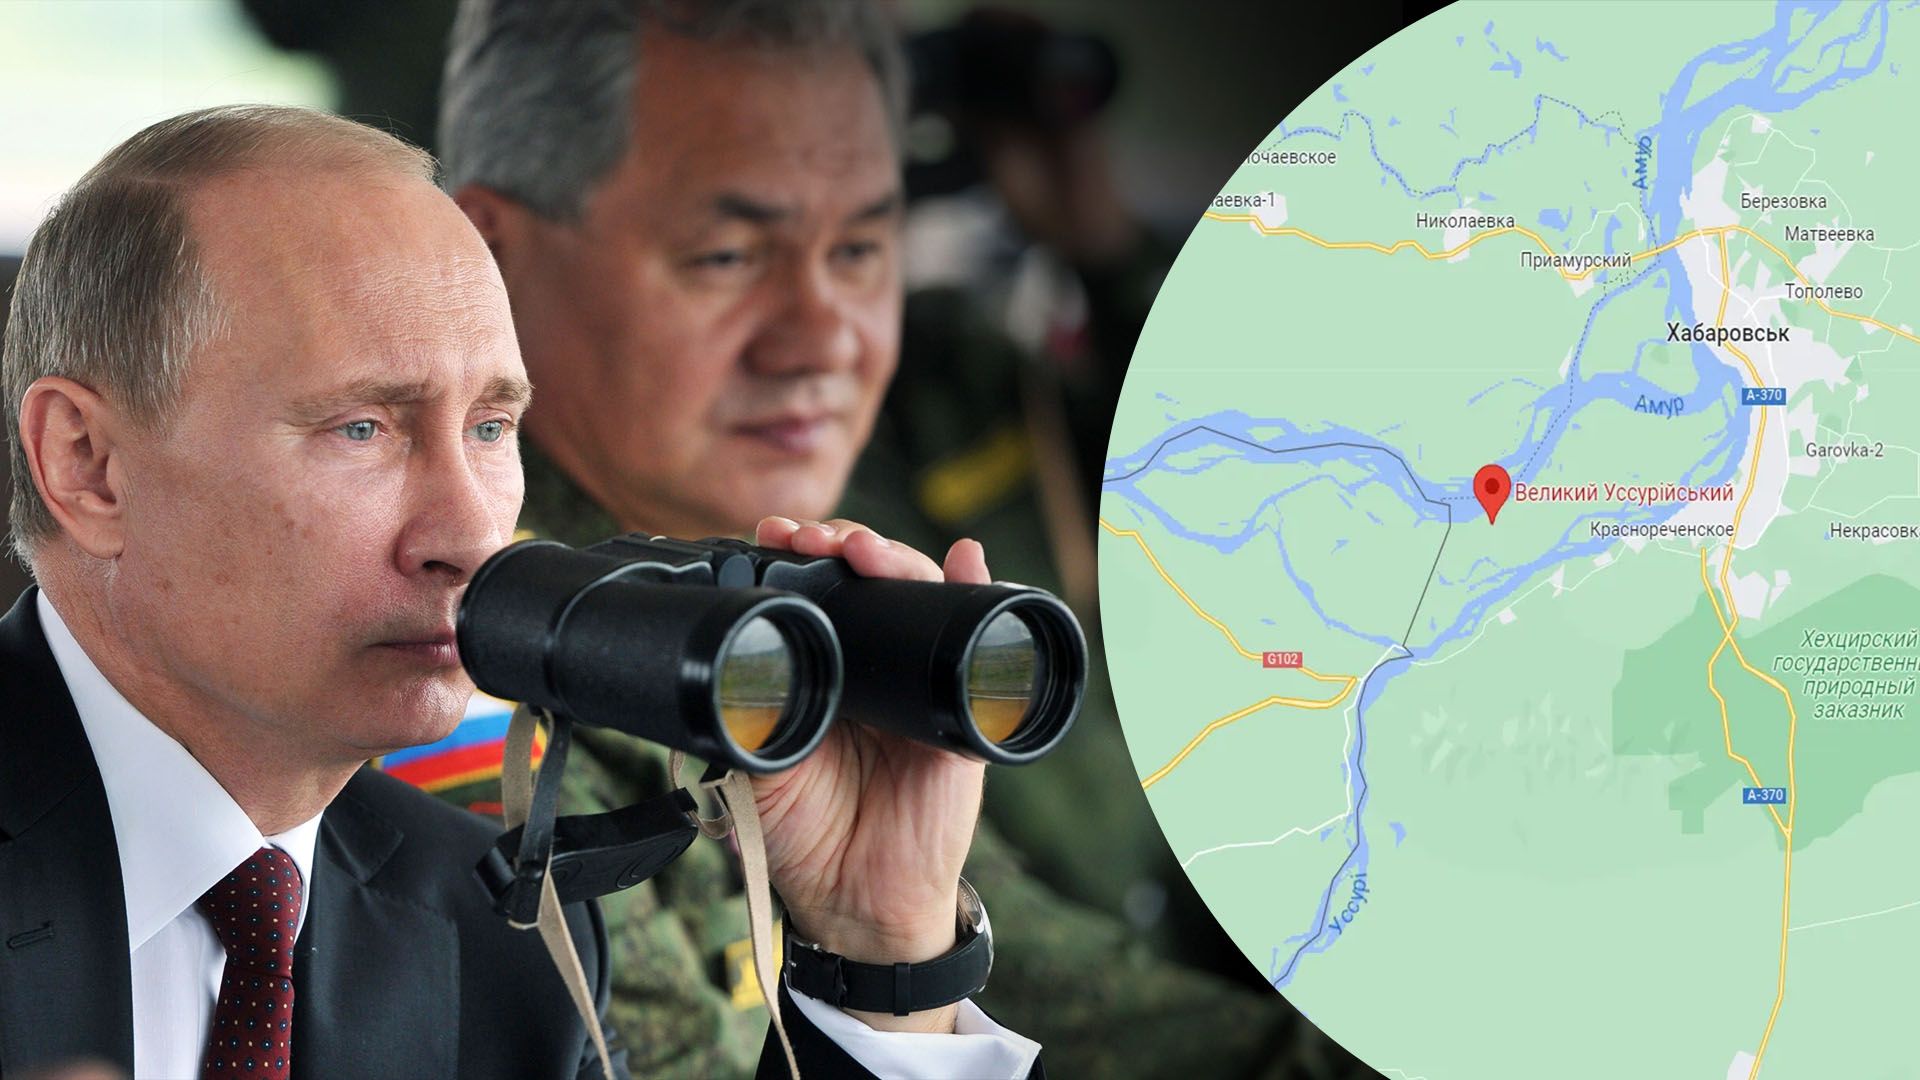 Китай претендует на российские территории - слабый Кремль становится зависимым от Пекина - 24 Канал